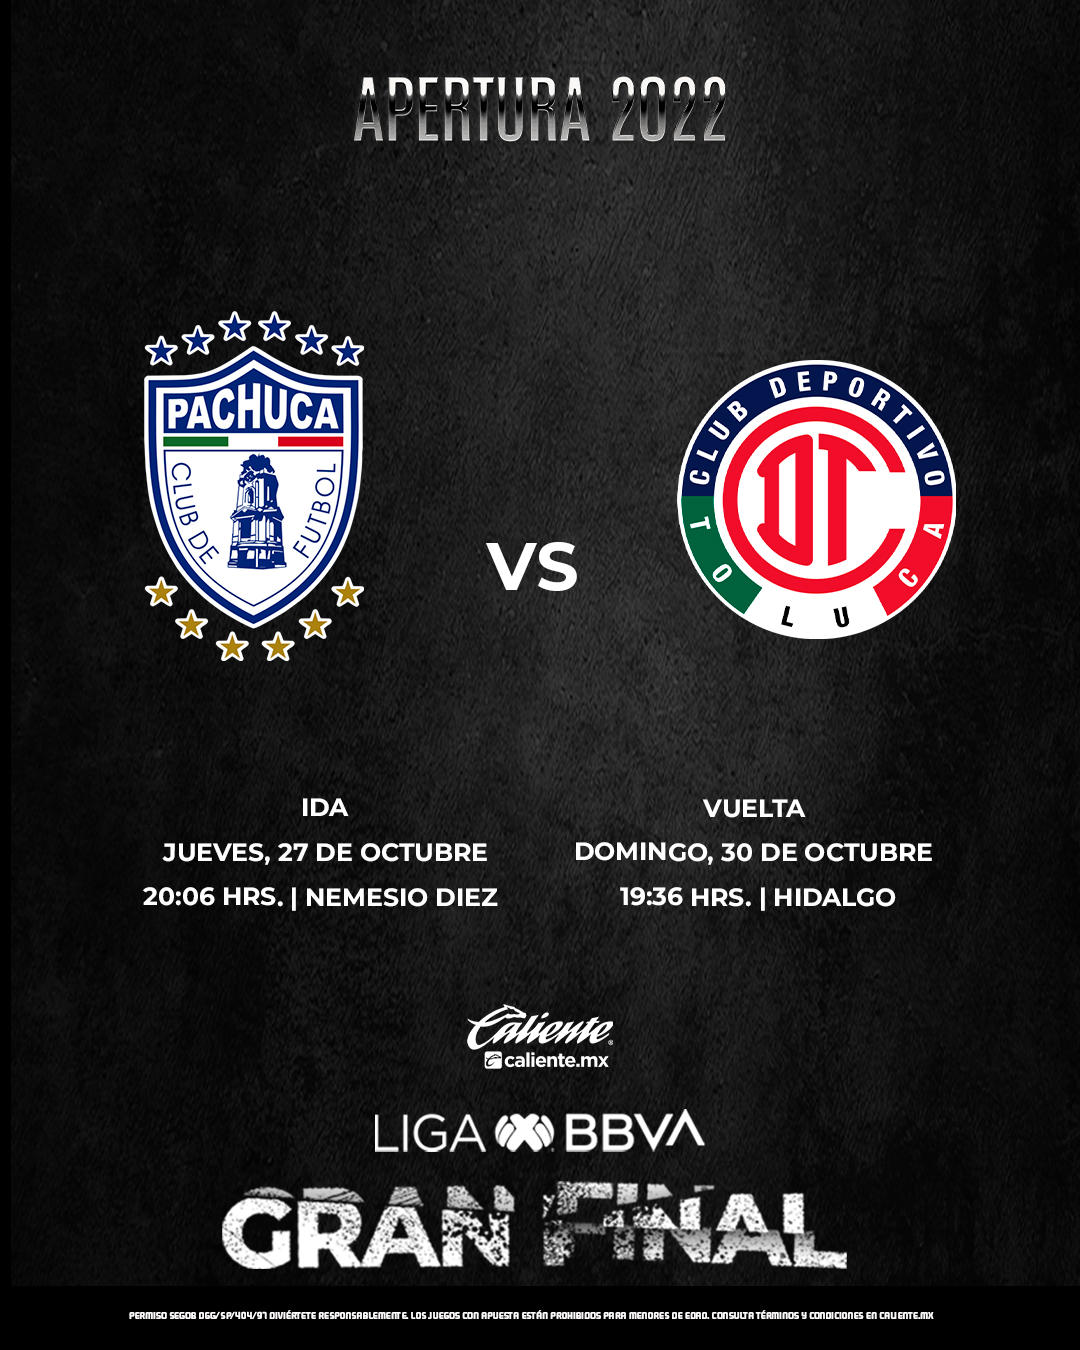 Pachuca es campeón del Apertura 2022; llega a siete títulos de liga – El  Financiero